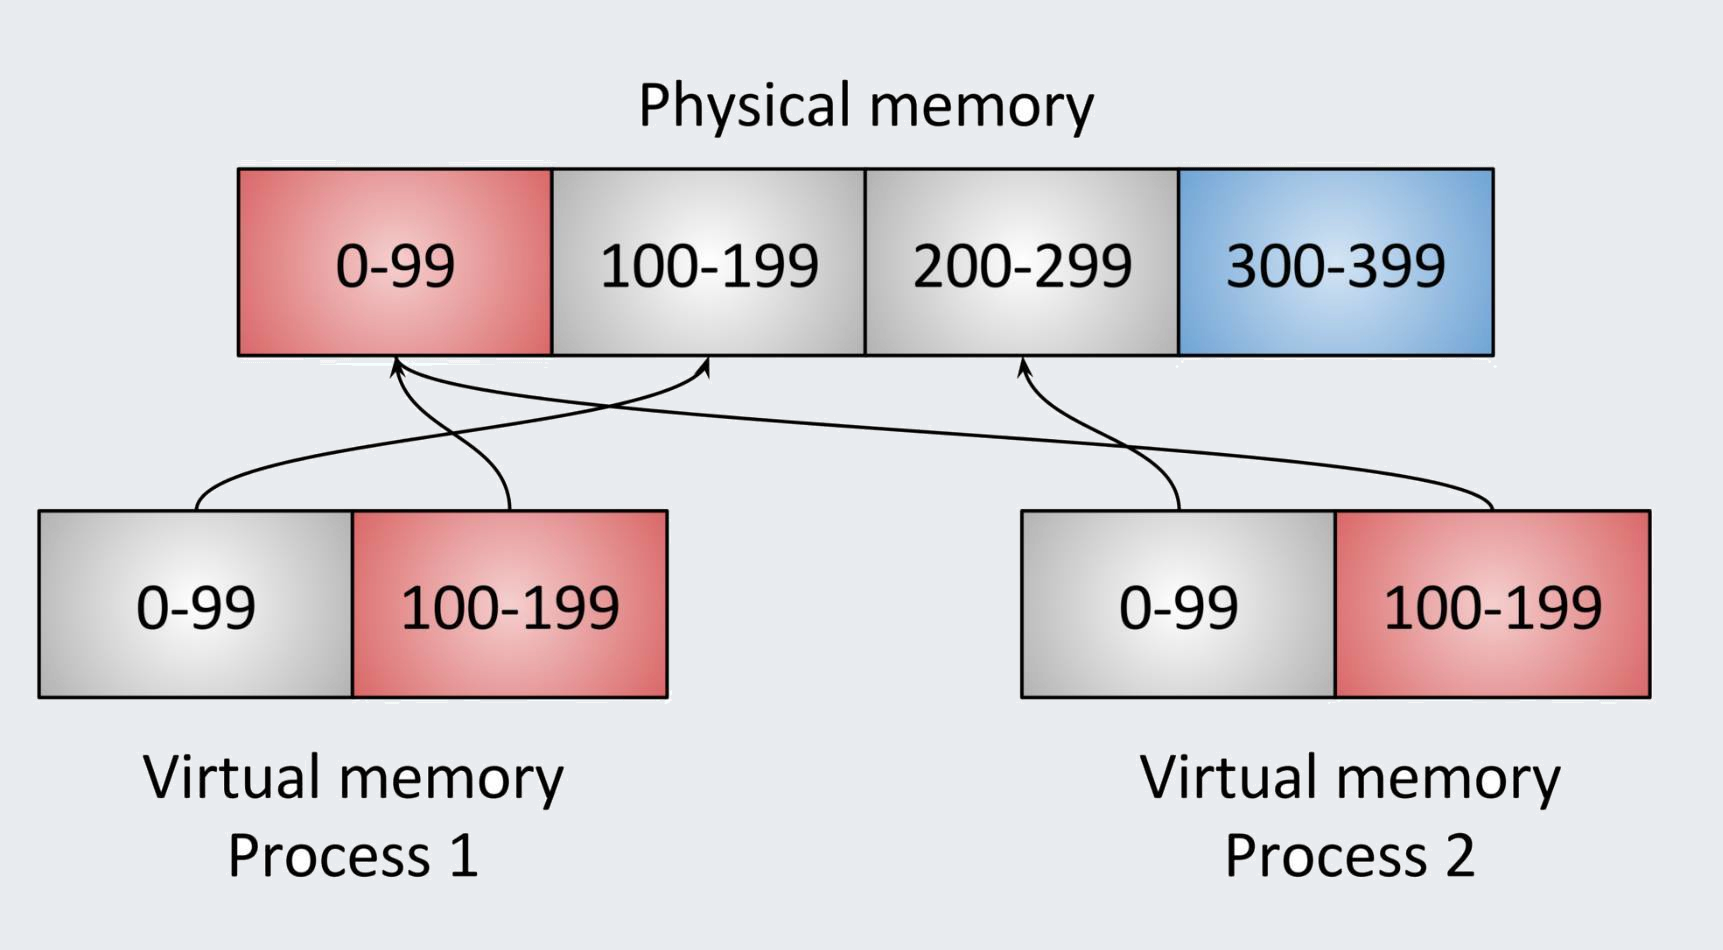 באיור מוצגים שני תהליכים, שמיוצגים בעזרת 2 תאים כל אחד. התא הראשון בכל תהליך נקרא 0-99, והתא השני נקרא 100-199. התאים הללו מייצגים את הזיכרון הוירטואלי של כל אחד מהתהליכים. מעליהם, ישנו בלוק גדול שמעליו כתוב &ldquo;Physical Memory&rdquo; ובו 4 תאים: 0-99, 100-199, 200-299, 300-399. מכל אחד מהתאים שלמטה (כלומר, של התהליכים שעבורם מוקצה זיכרון וירטואלי), יוצא חץ שממפה את הזיכרון הוירטואלי לזיכרון הפיזי של המחשב. לדוגמה, מהתא של התהליך הראשון שעליו כתוב 0-99, יוצא חץ לעבר התא 200-299 של הזיכרון הפיזי. מהתא
של התהליך השני שעליו כתוב 0-99, יוצא חץ לעבר התא 100-199 של הזיכרון הפיזי.